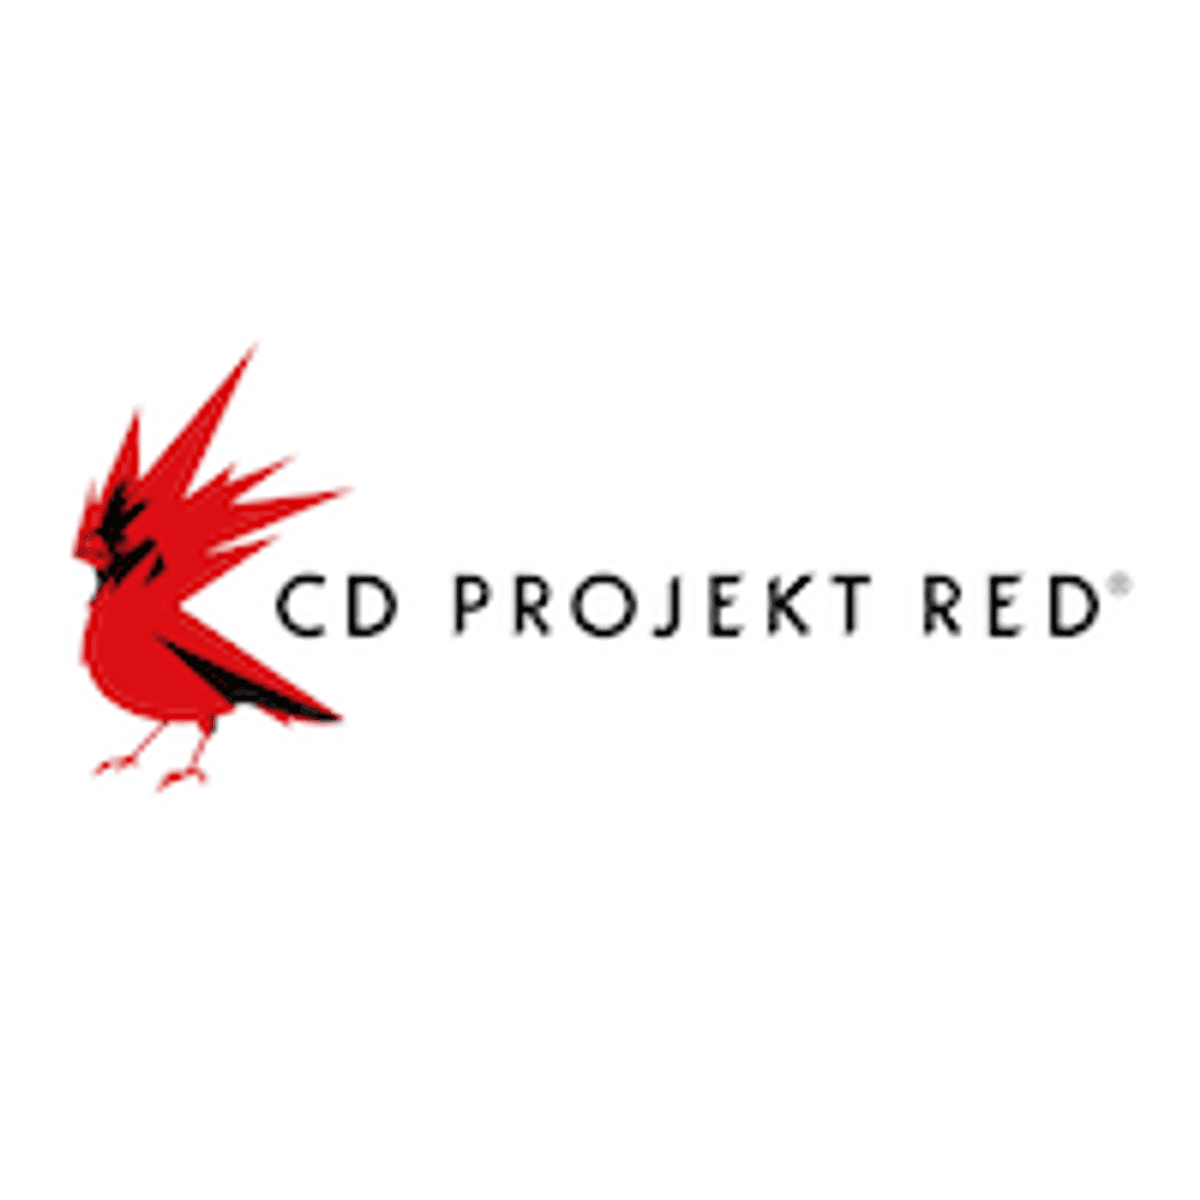 Gameontwikkelaar CD Projekt doelwit van chantage image